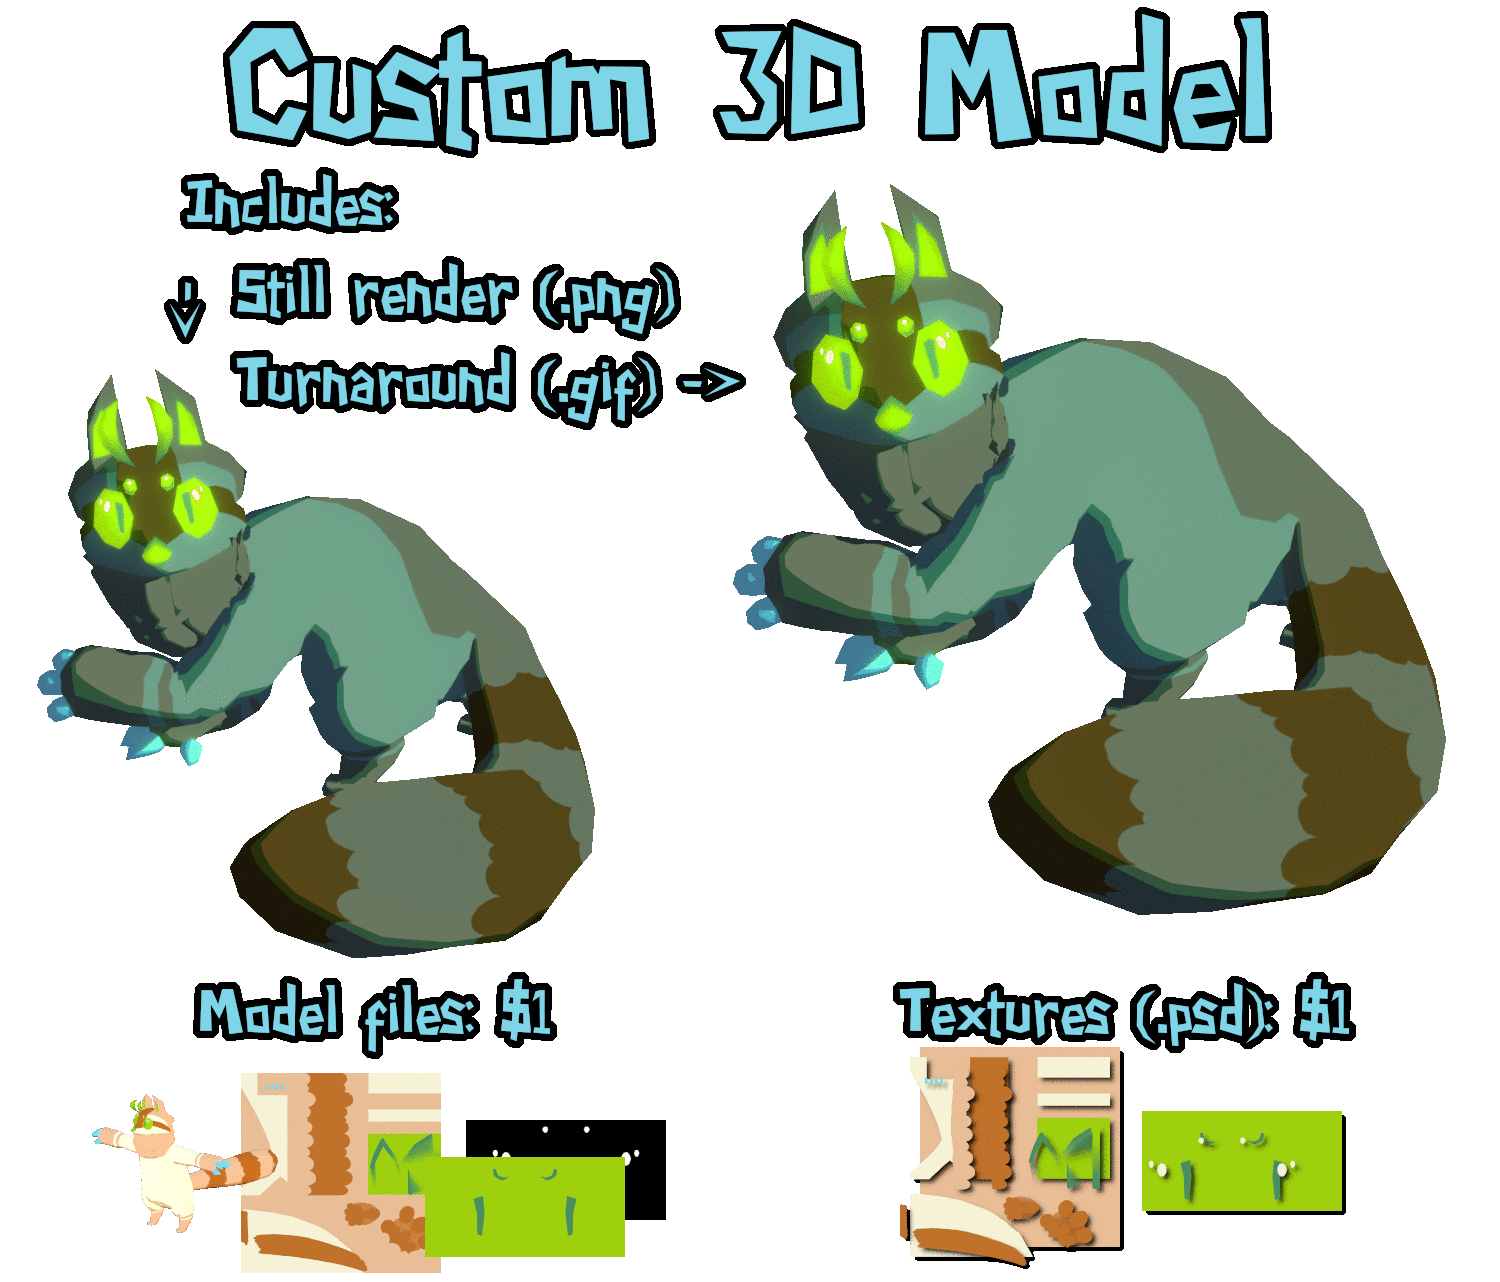 3D Custom Model - $70